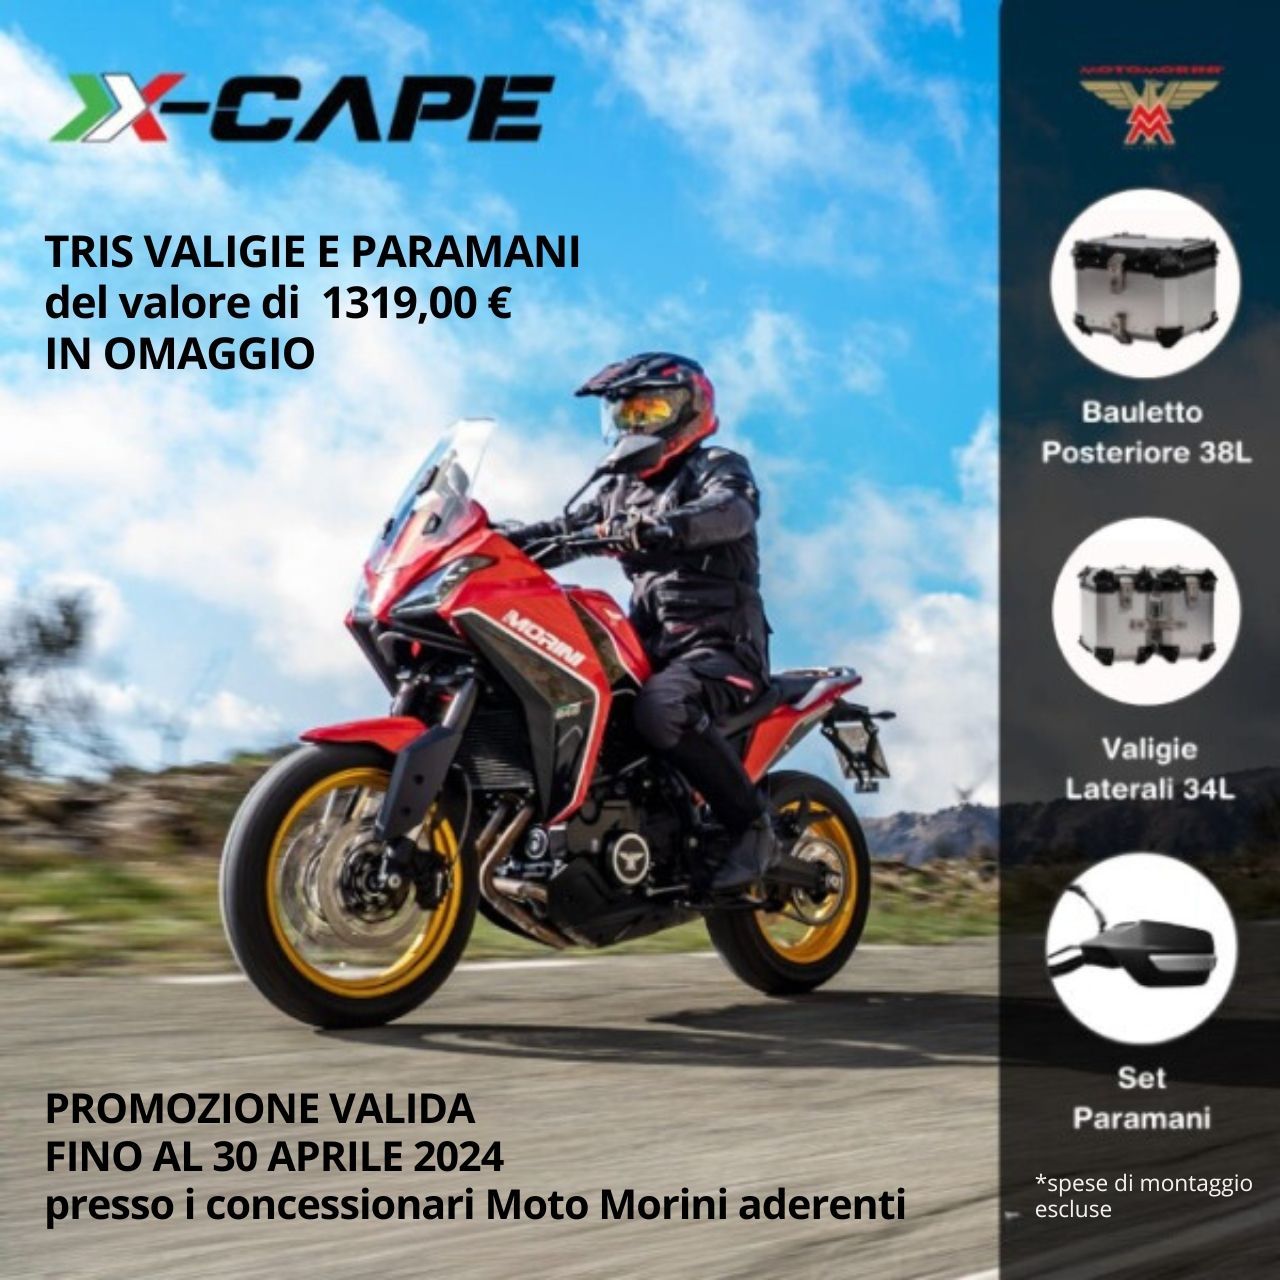 Moto Morini X-Cape promozione